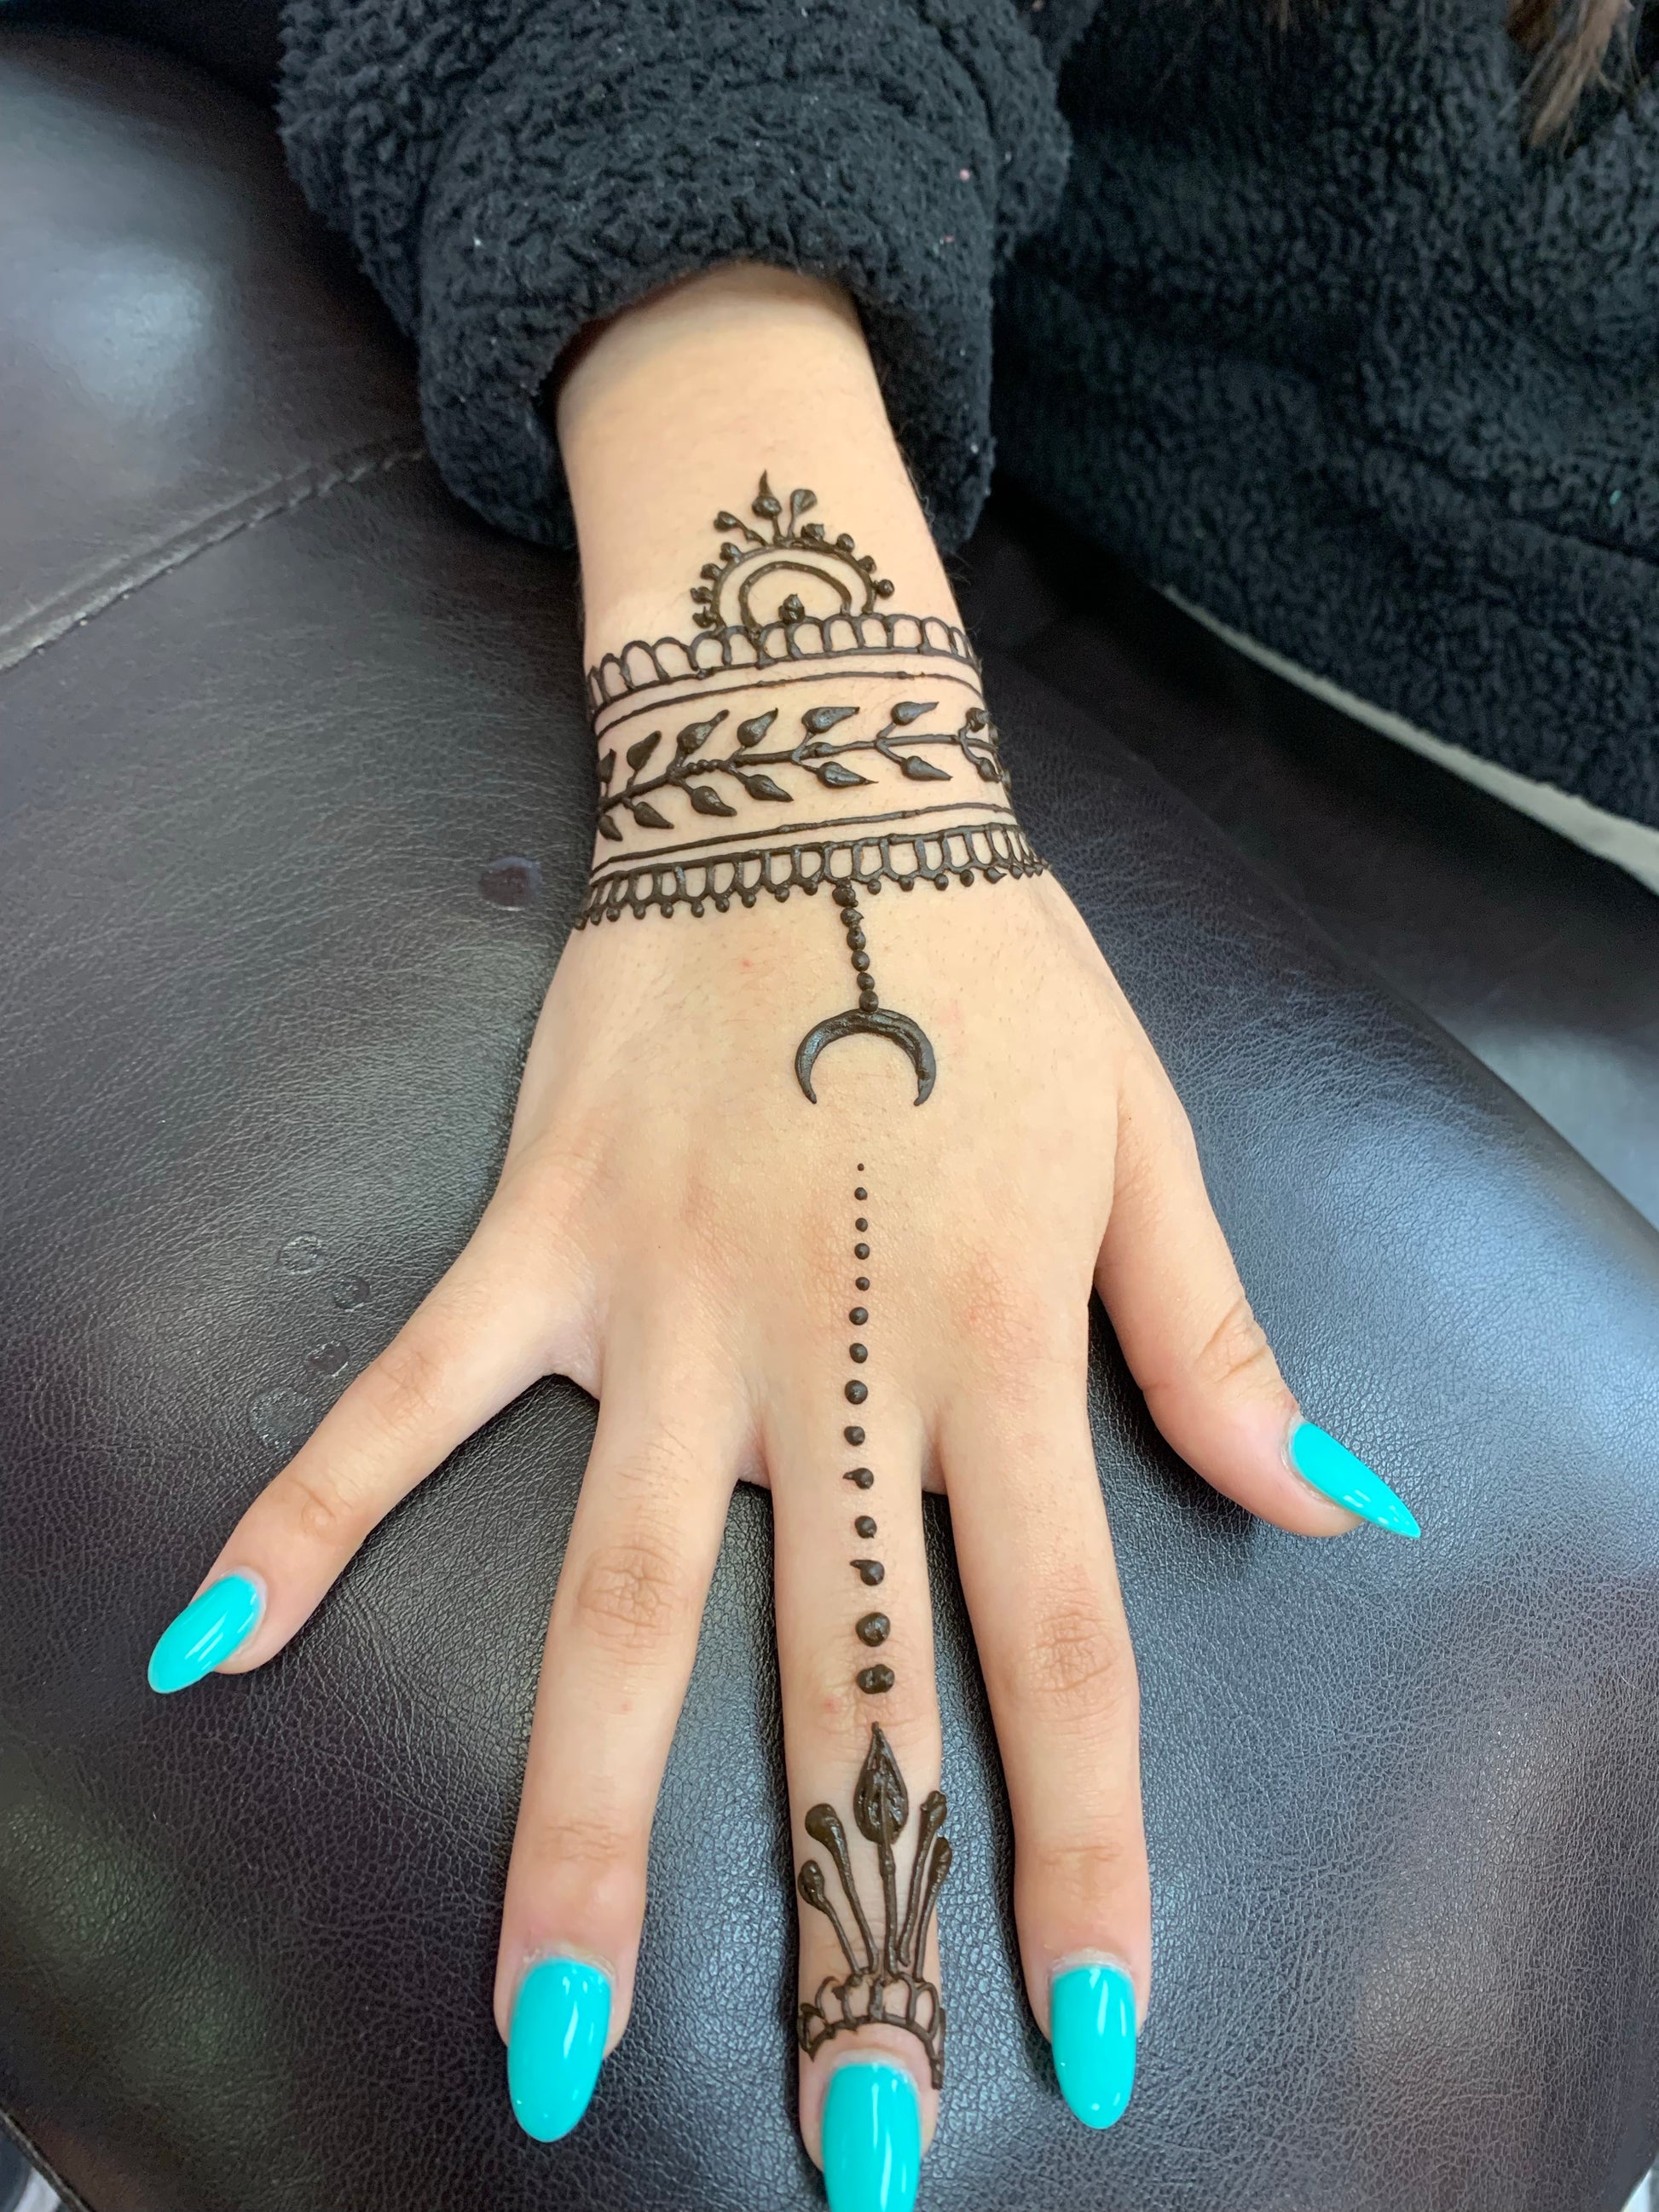 12 Best Henna tattoo wrist ideas  henna tattoo designs henna designs  hand henna tattoo